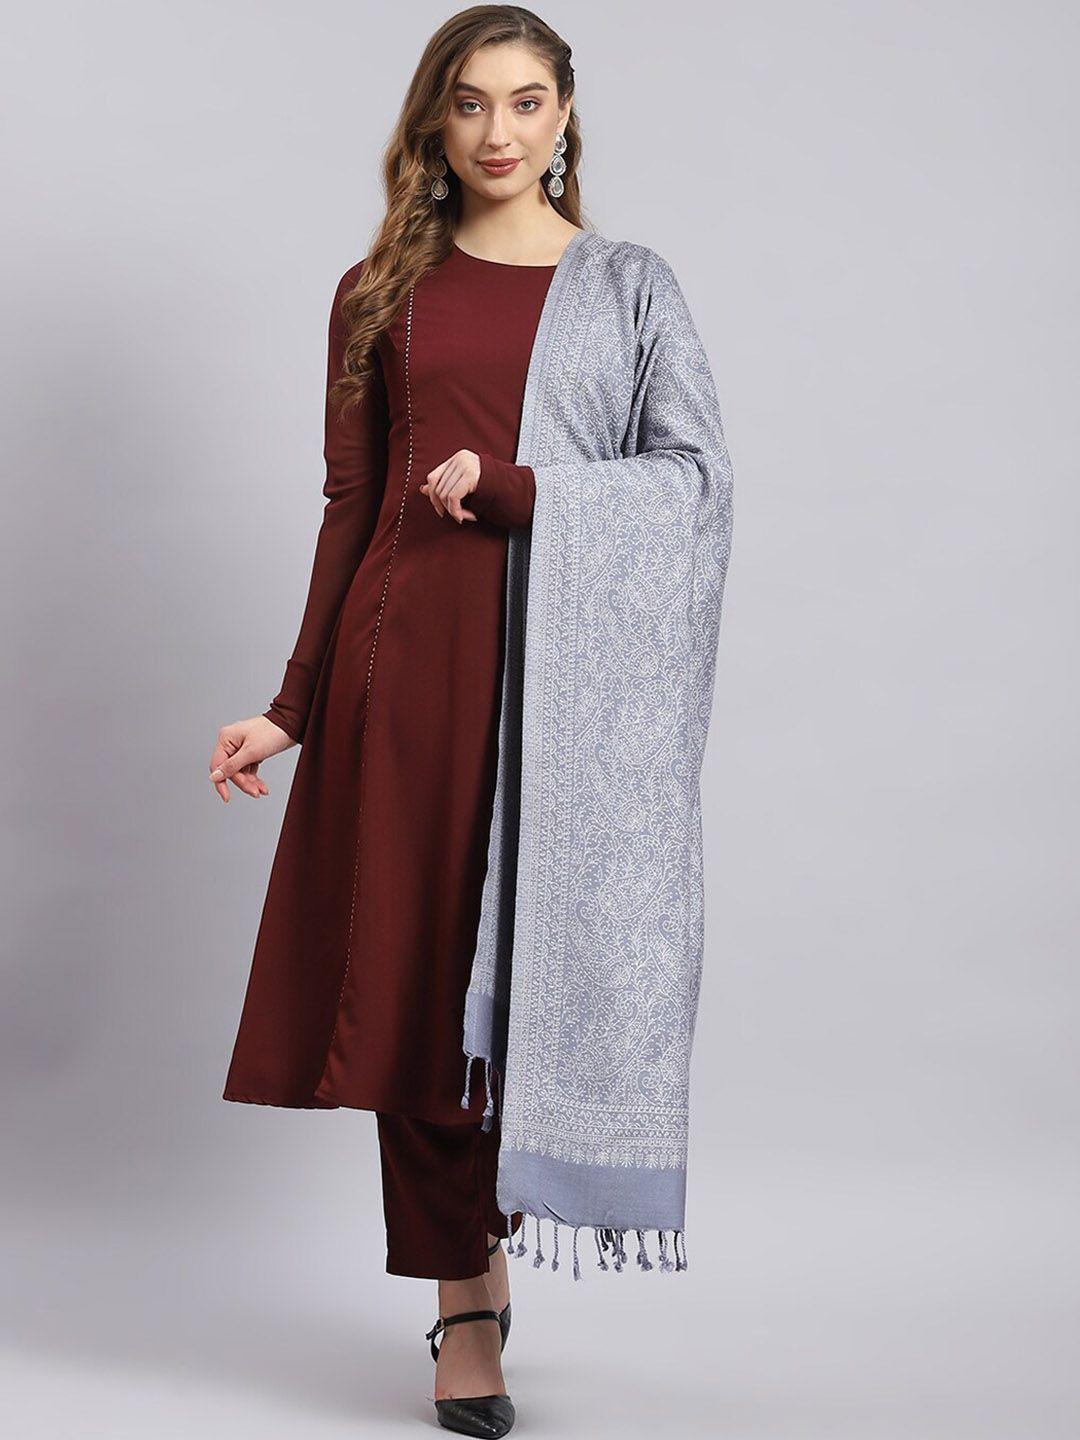 monte carlo woven design shawl